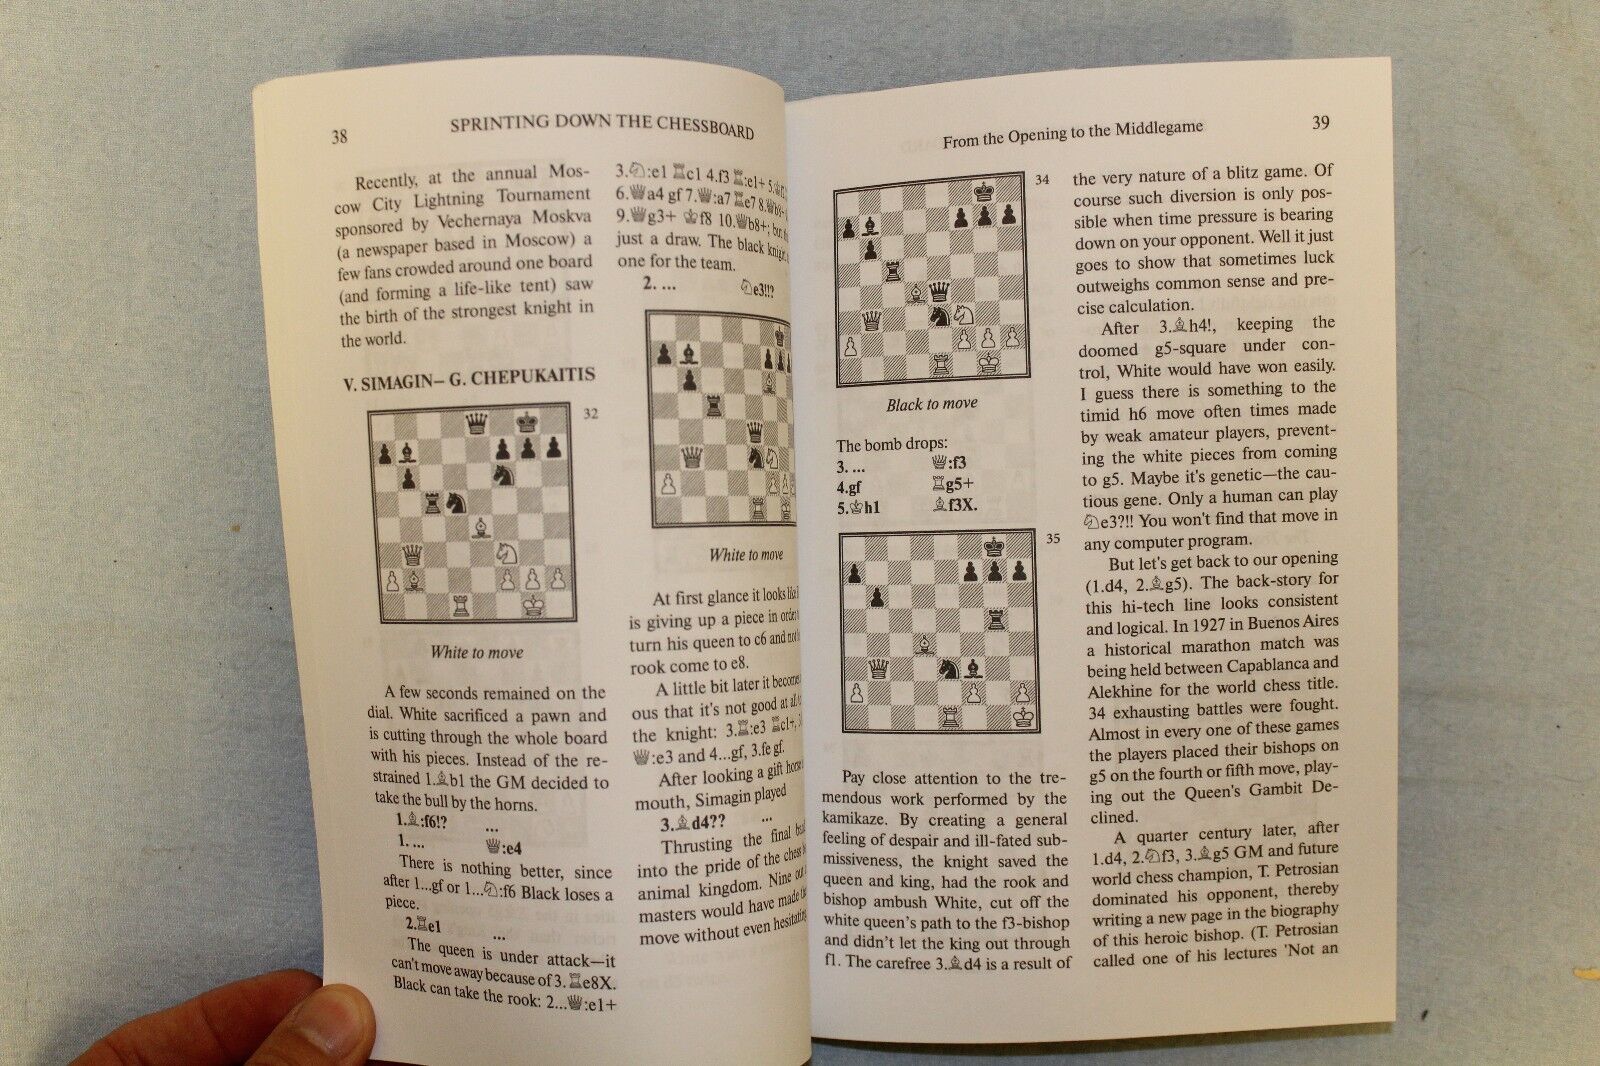 11515.Russian Chess Book: Genrikh Chepukaitis. Winning at Blitz. A Fun Guide to Blitz